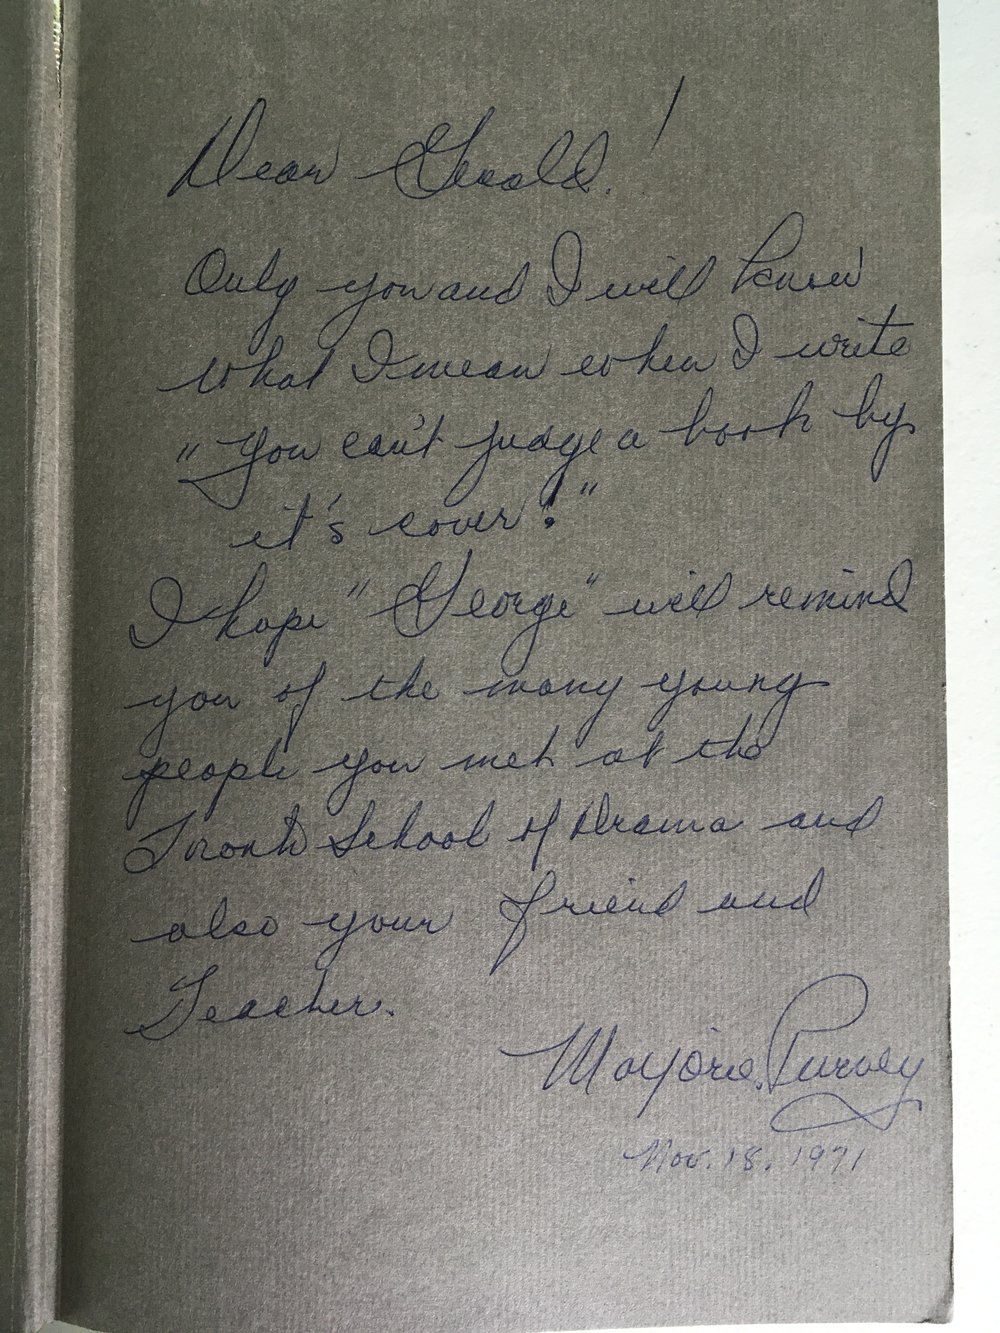 Williams book inscription